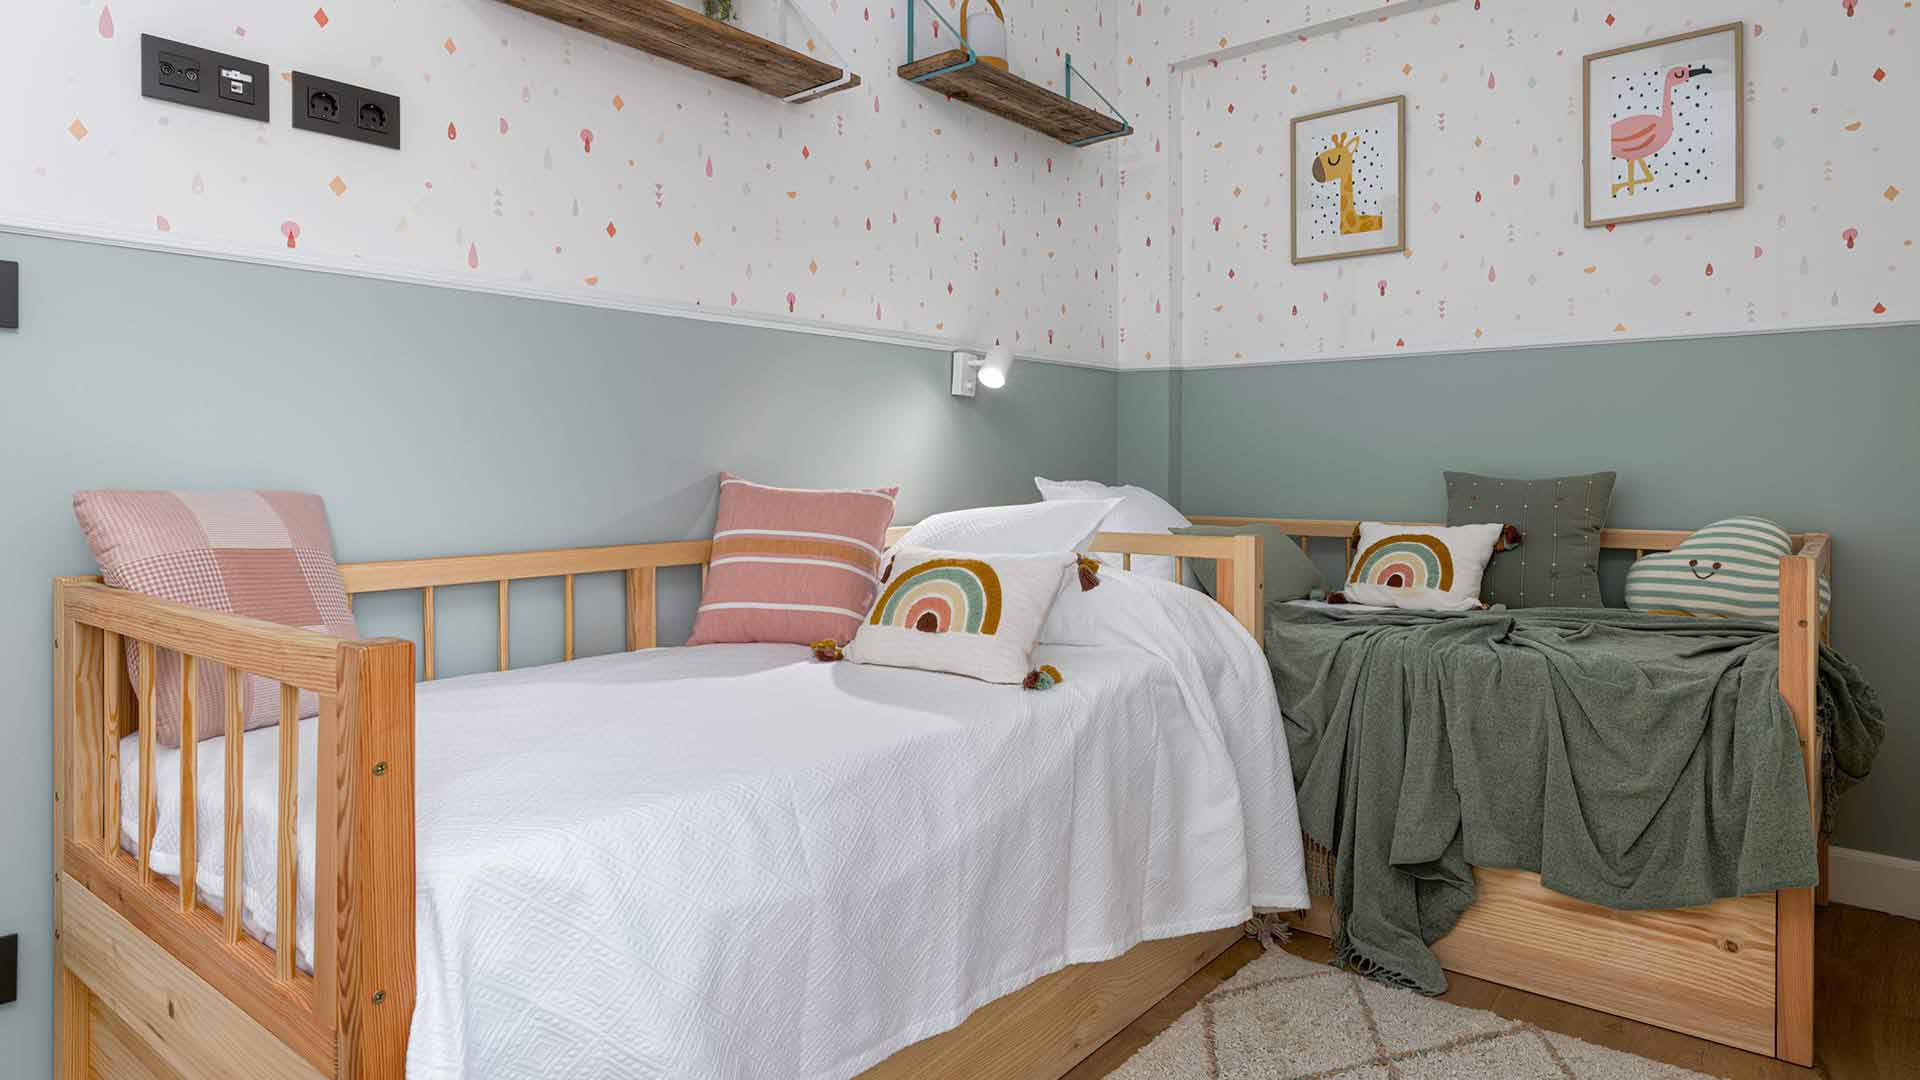 Habitación infantil con dos camas nido de madera, armario empotrado con puertas correderas y papel pintado. Foto Manu Luque